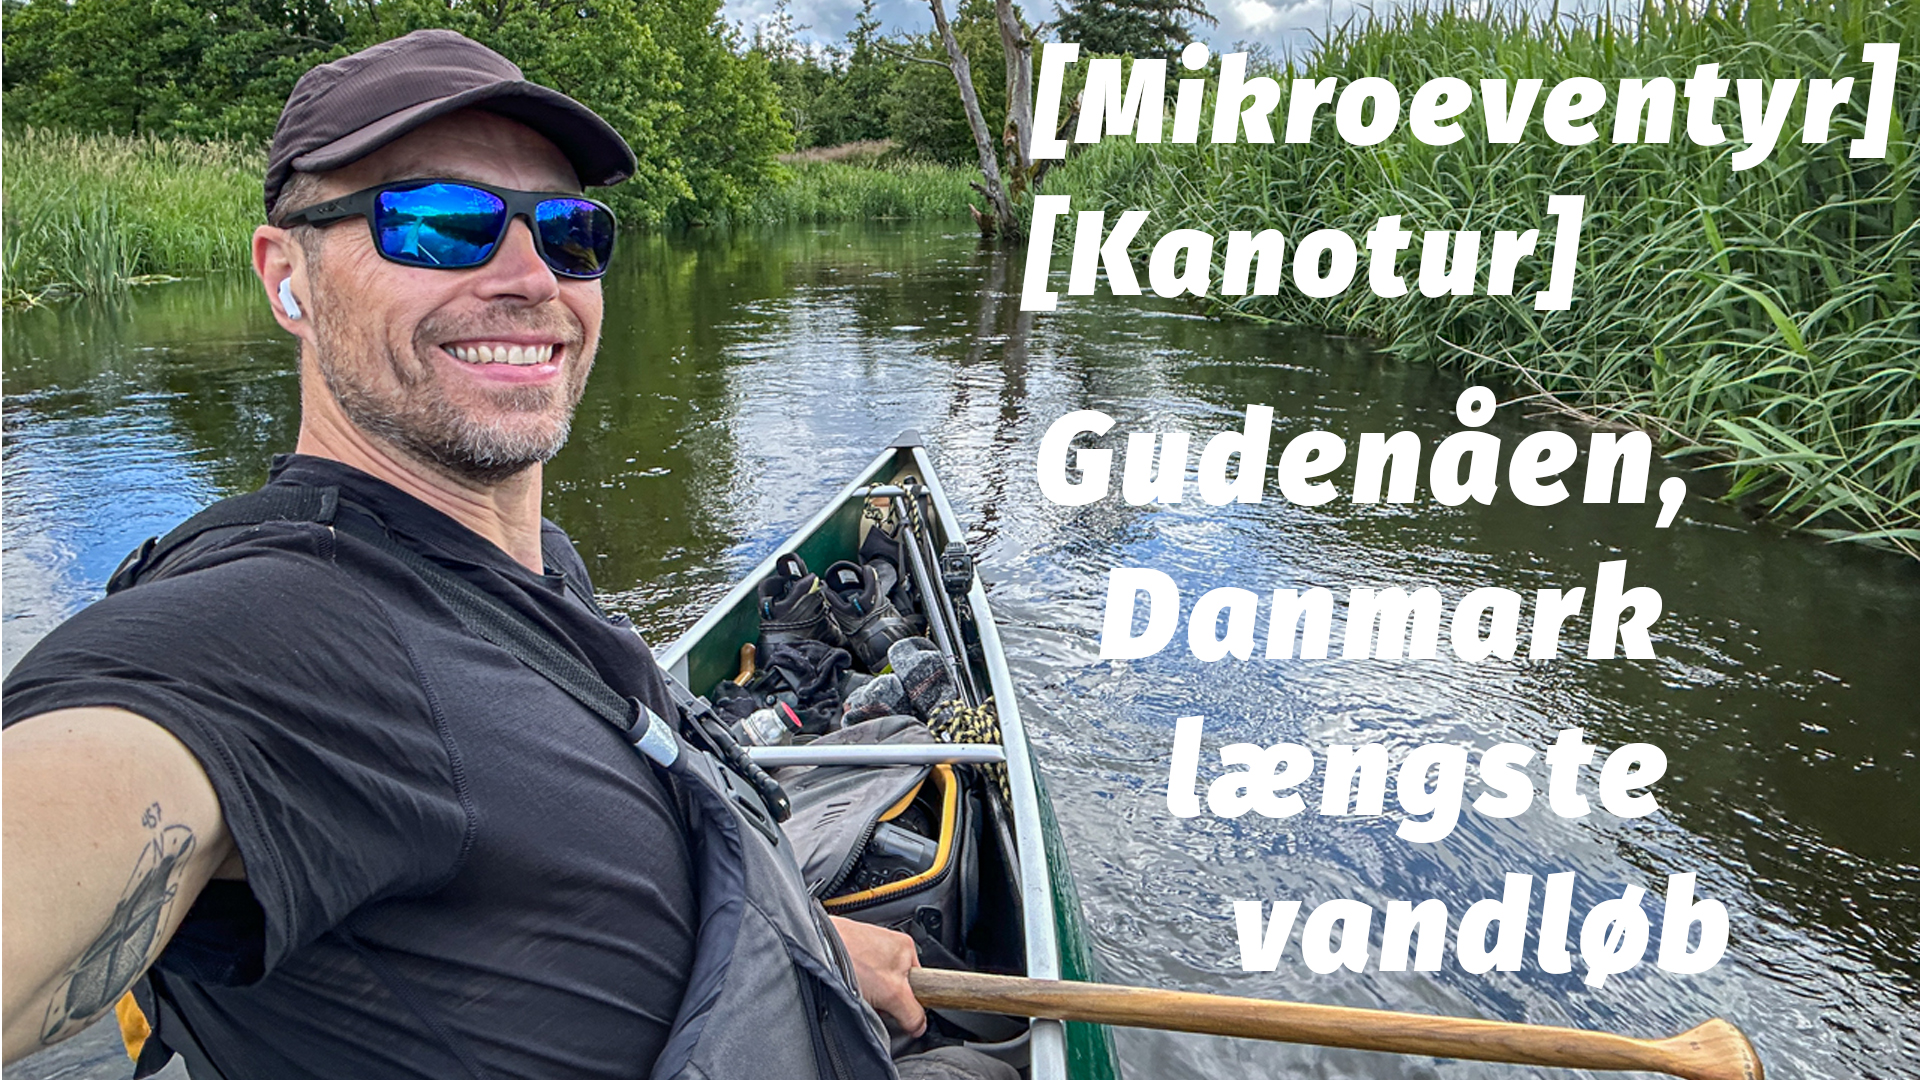 Gudenåen, kanotur på Danmark længste vandløb [Mikroeventyr] Med eventyrer Erik B. Jørgensen